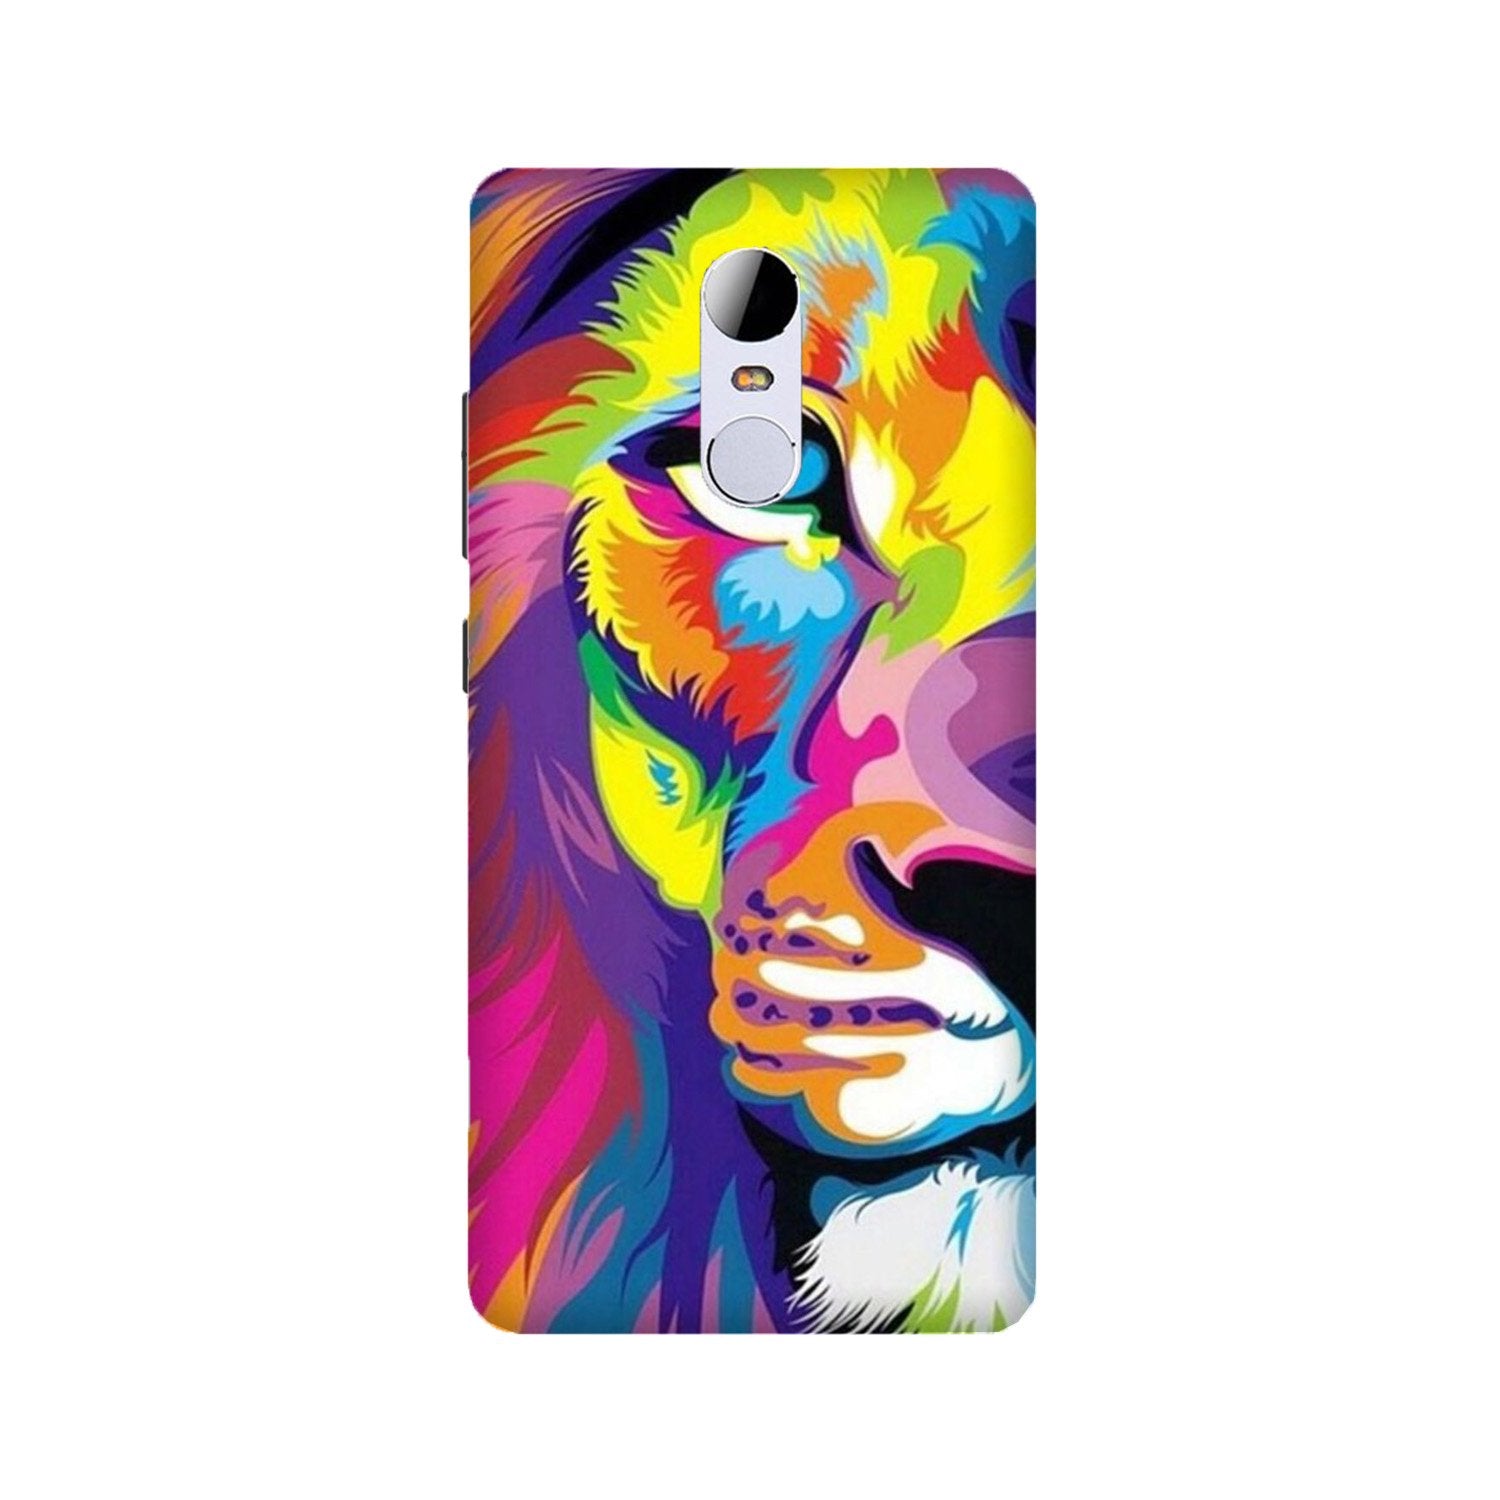 Colorful Lion Case for Redmi Note 4(Design - 110)